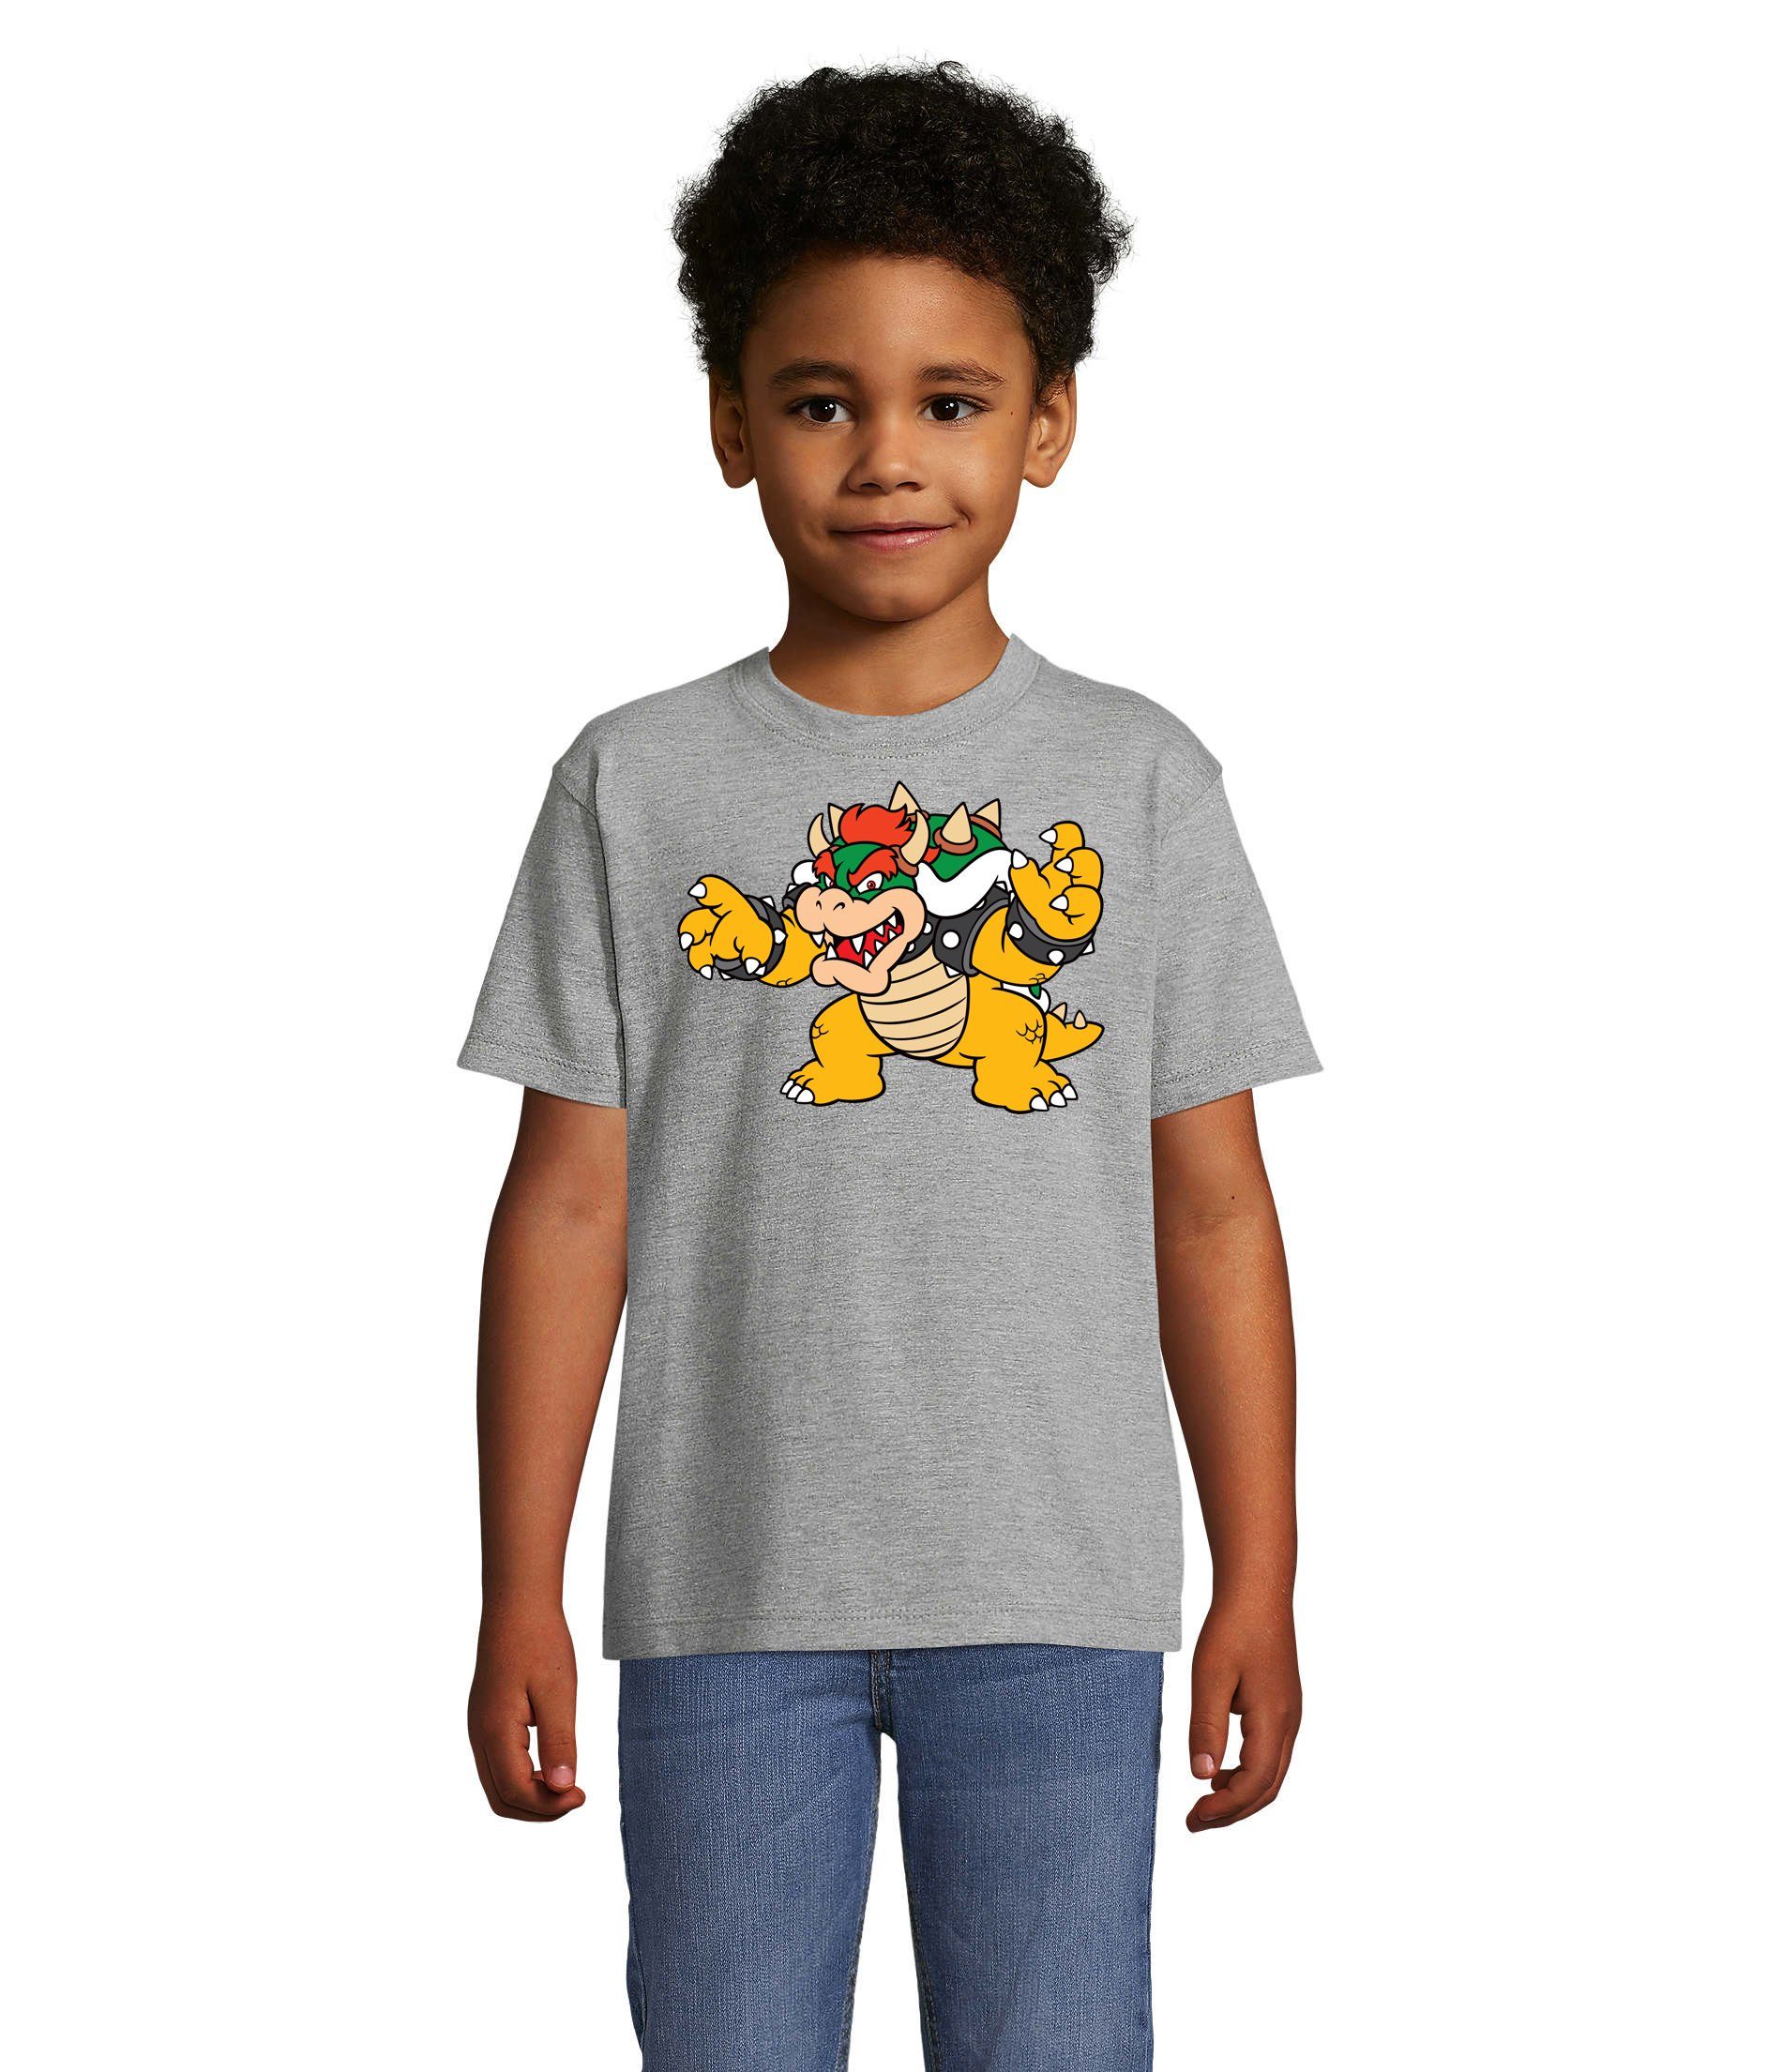 Blondie & Brownie T-Shirt Kinder Bowser Nintendo Mario Yoshi Luigi Game Gamer Konsole Grau